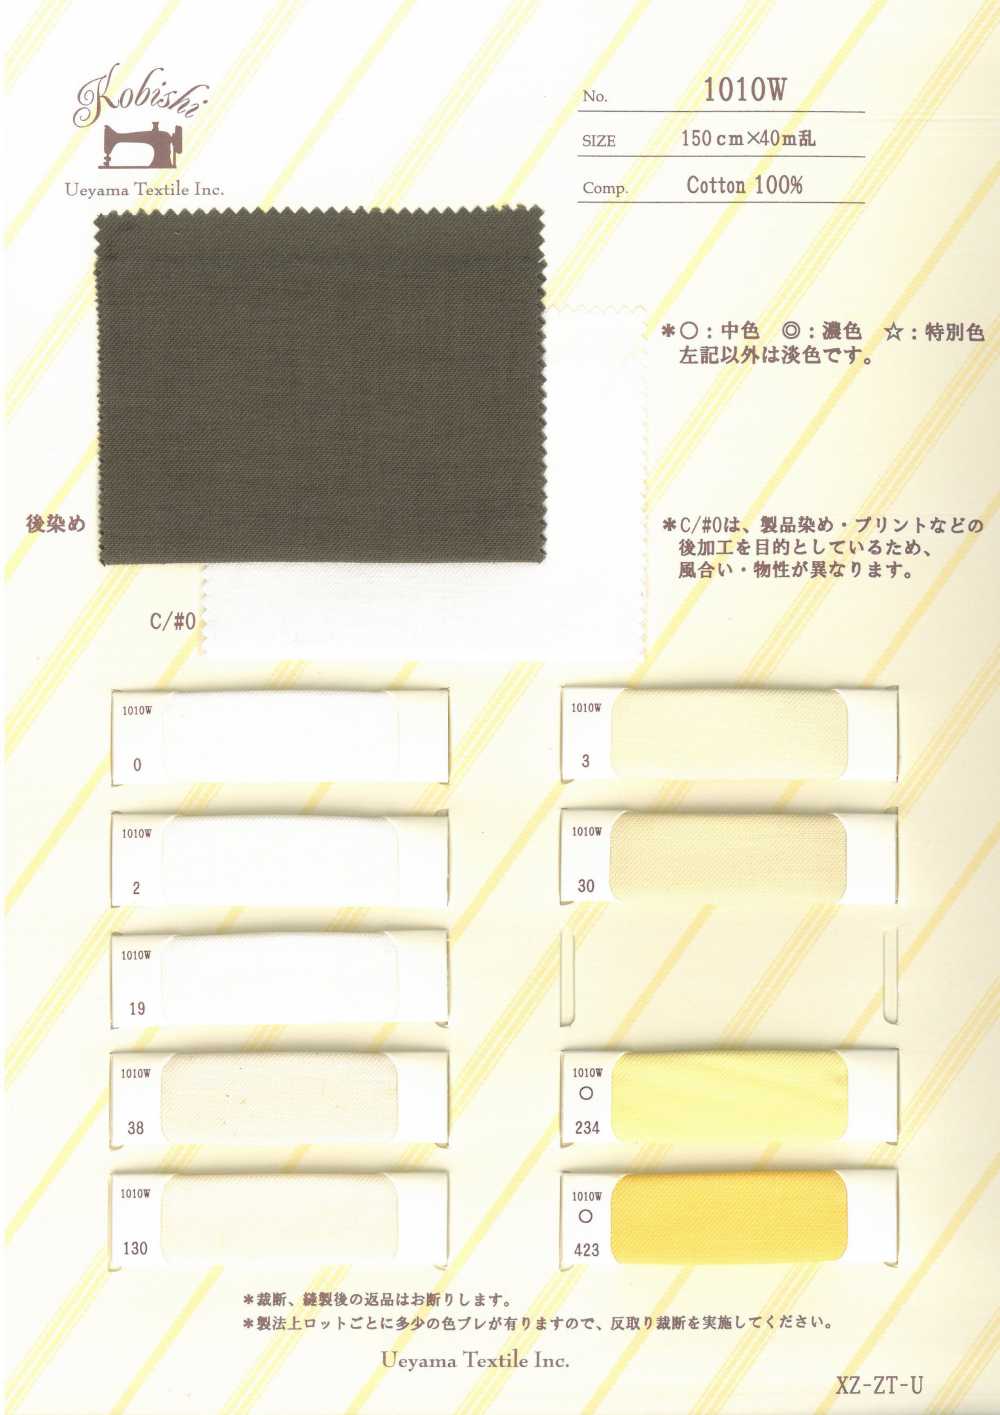 1010W Fodera Tasca Larga N. 4[Fodera Tascabile] Ueyama Textile